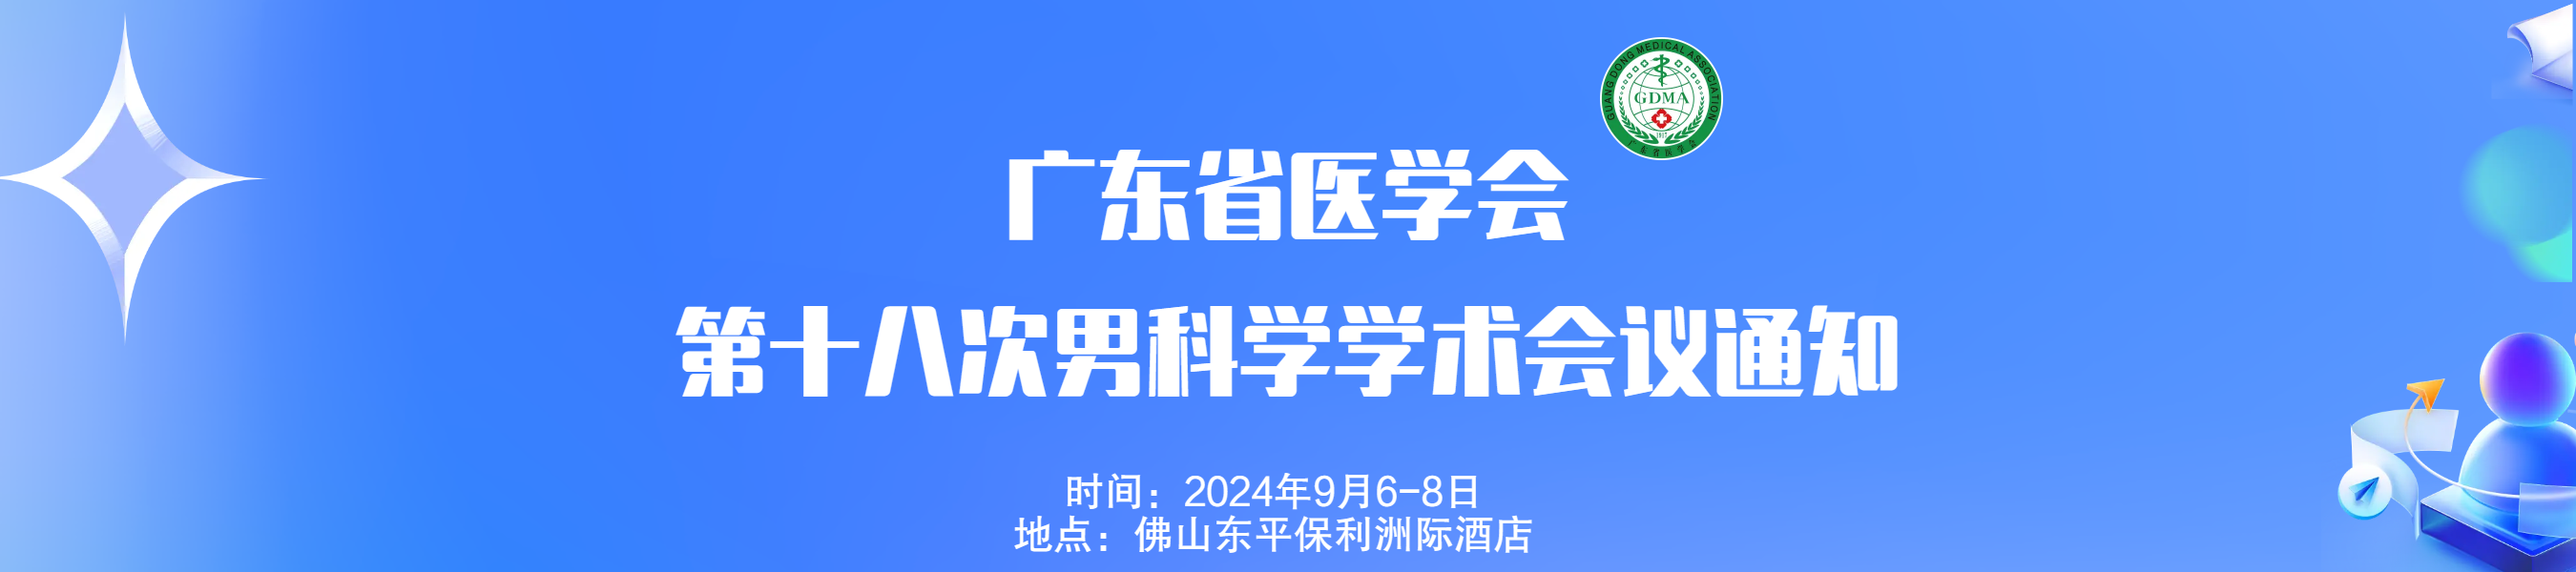 广东省医学会第十八次男科学学术会议